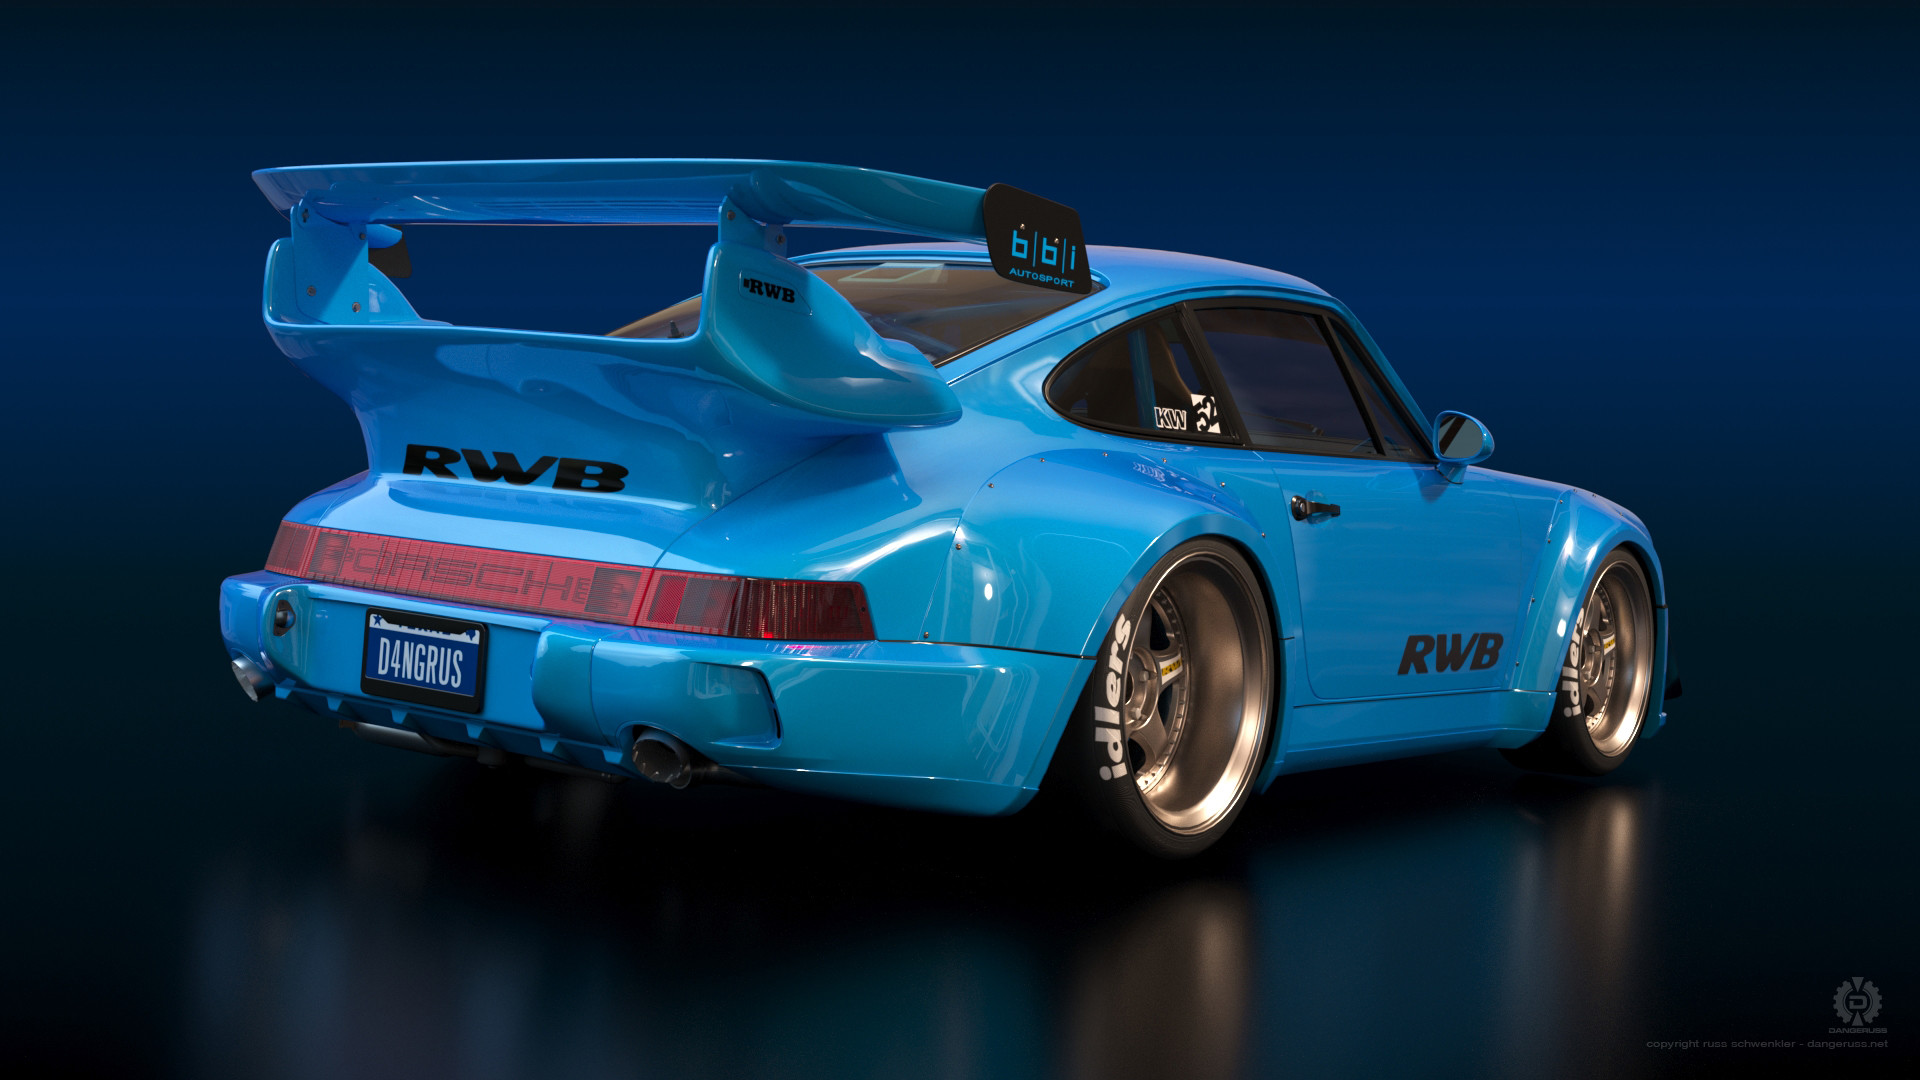 General 1920x1080 Porsche German cars car vehicle sports car digital art Porsche 911 RWB blue cars Porsche 911 Rauh Welt Porsche 964